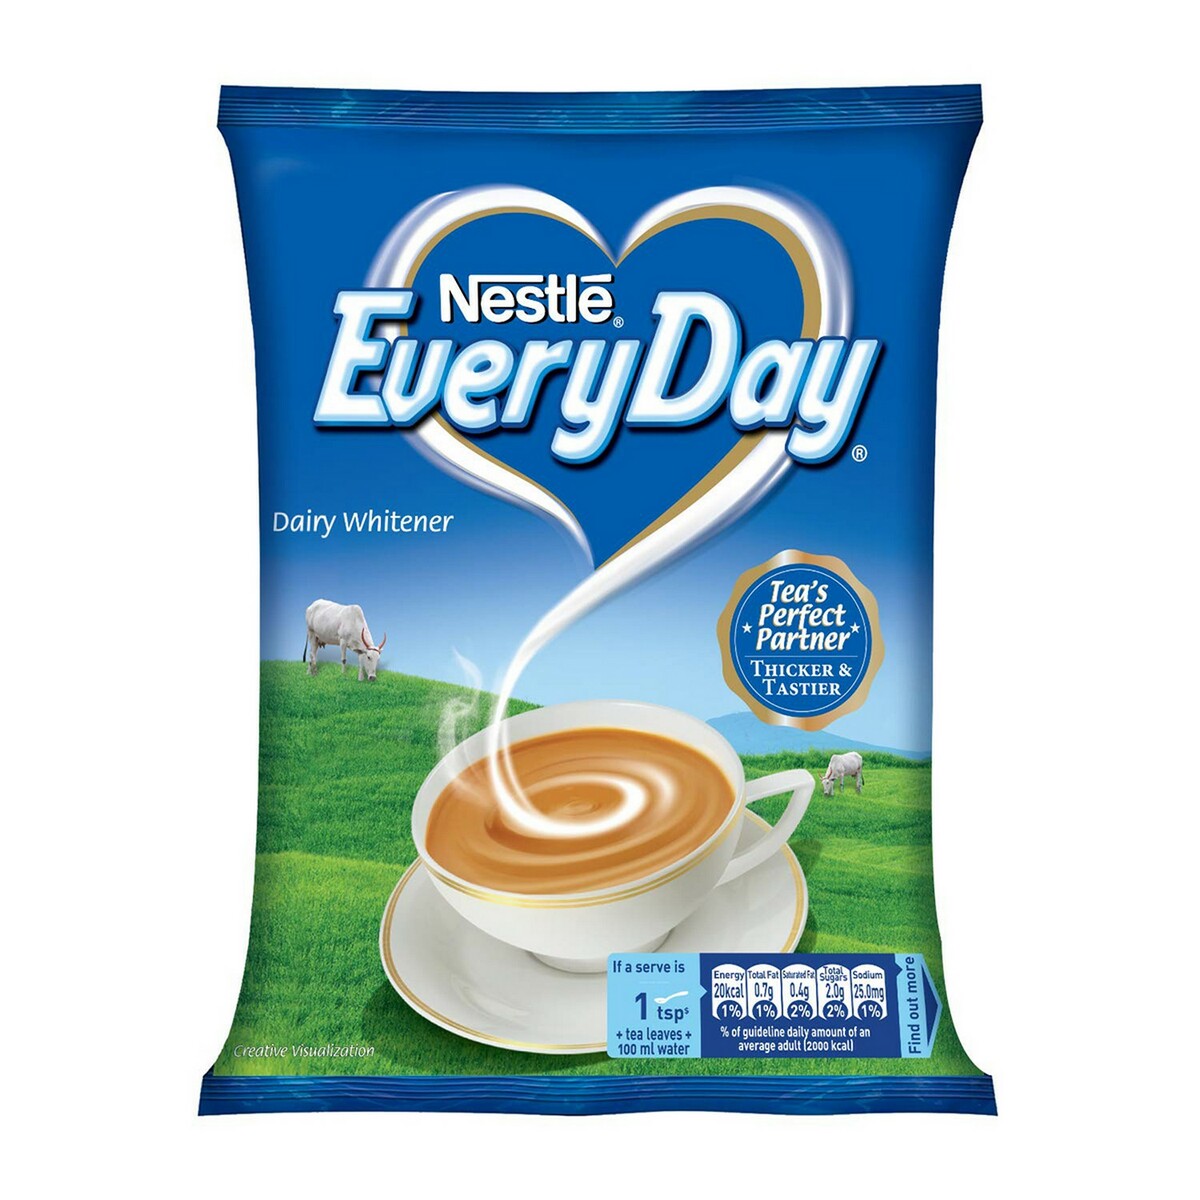 Nestle Everyday Milk Powder 400g